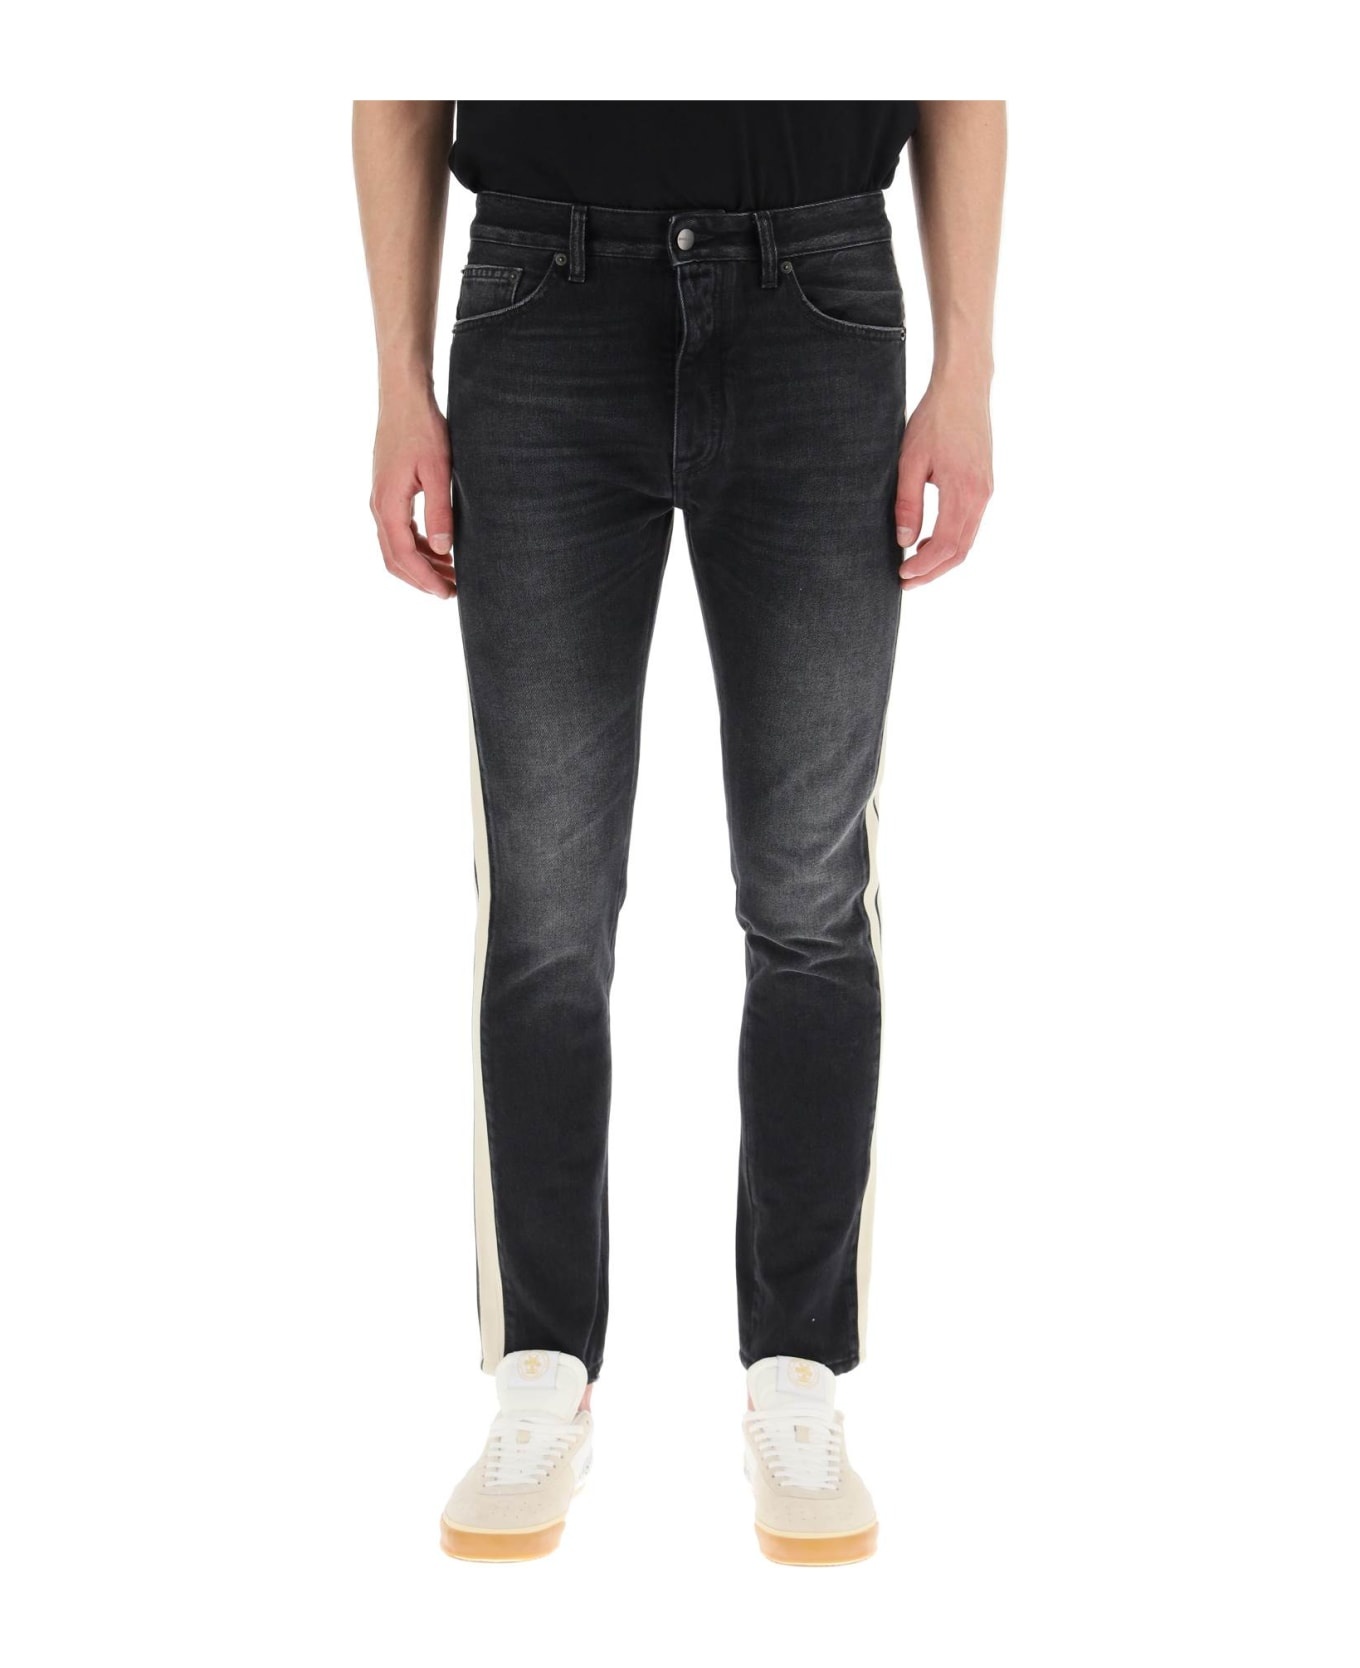 Jeans In Black Denim - 2